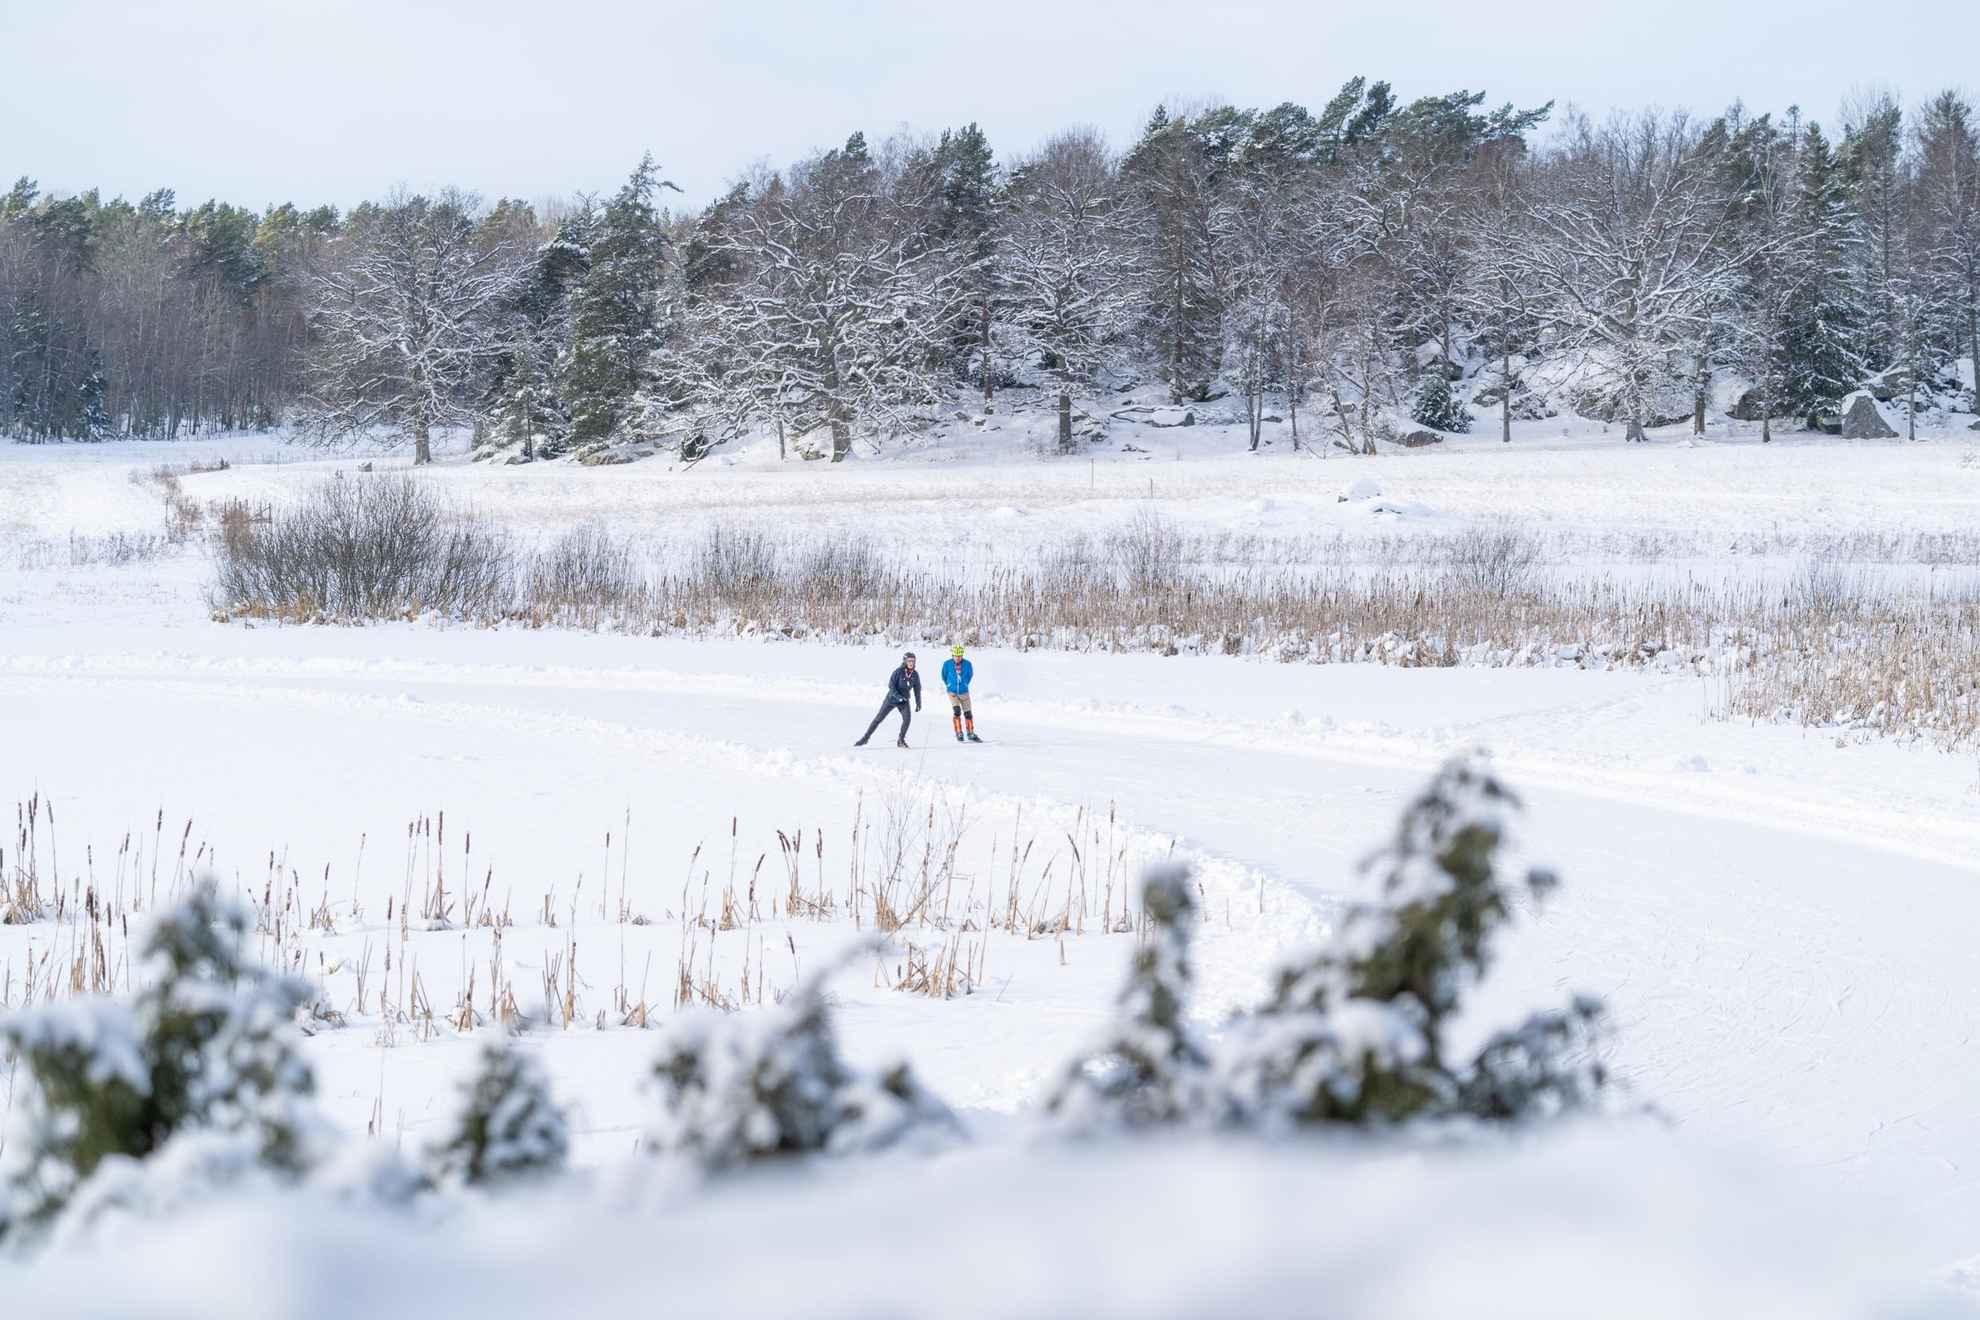 Un paysage couvert de neige avec deux personnes en train de faire du patin à glace.